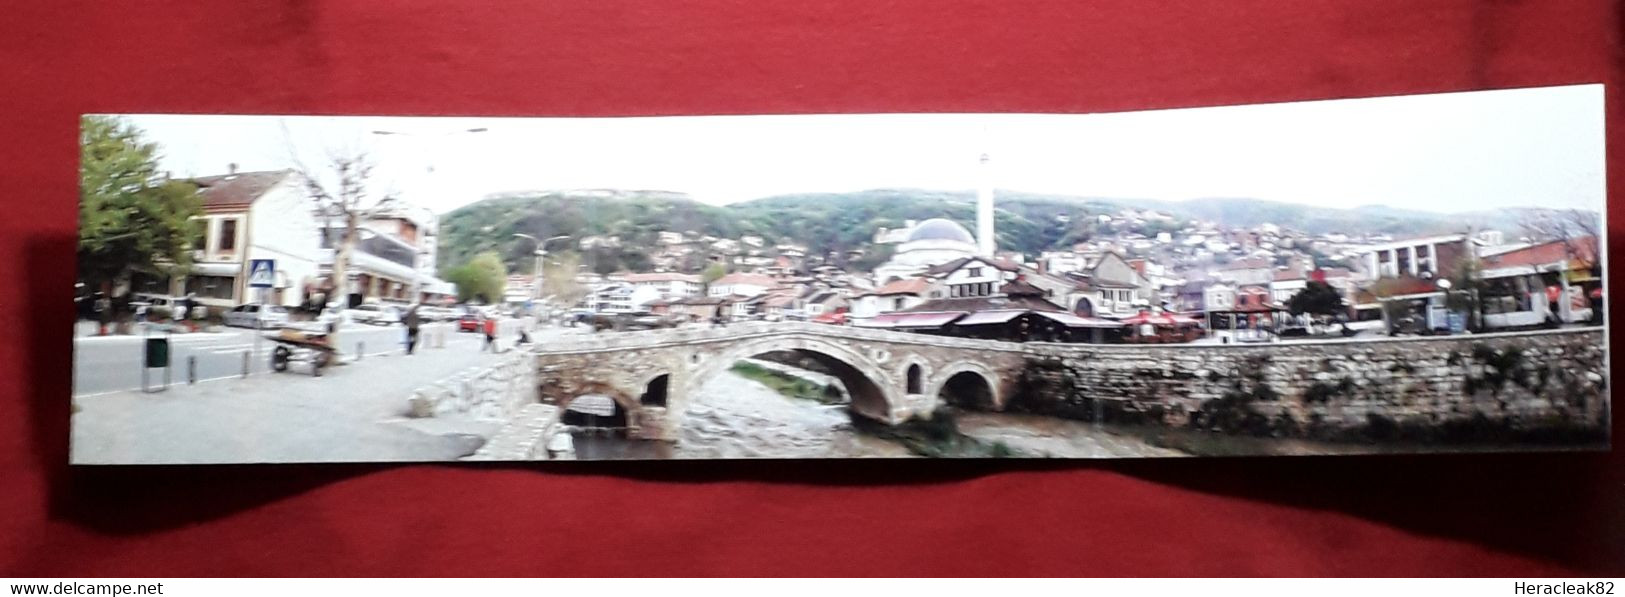 Kosovo Tripple Long Postcard Pizren - Kosovo